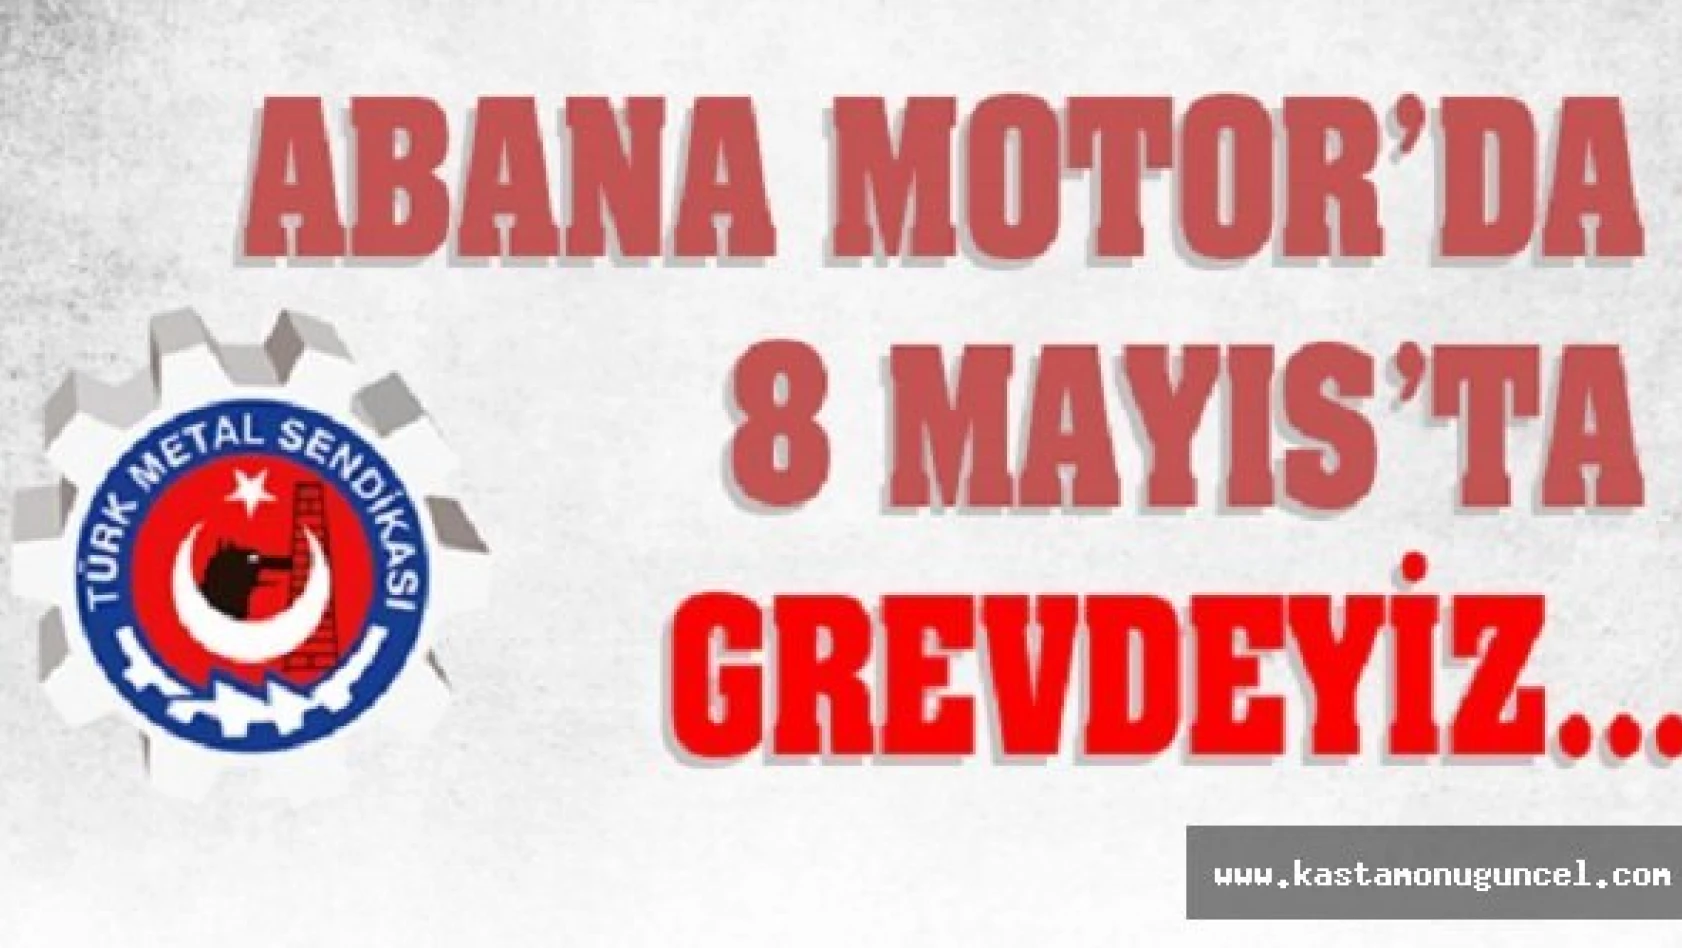 Abana Motor, 8 Mayıs'ta Grevi Başlatıyor.